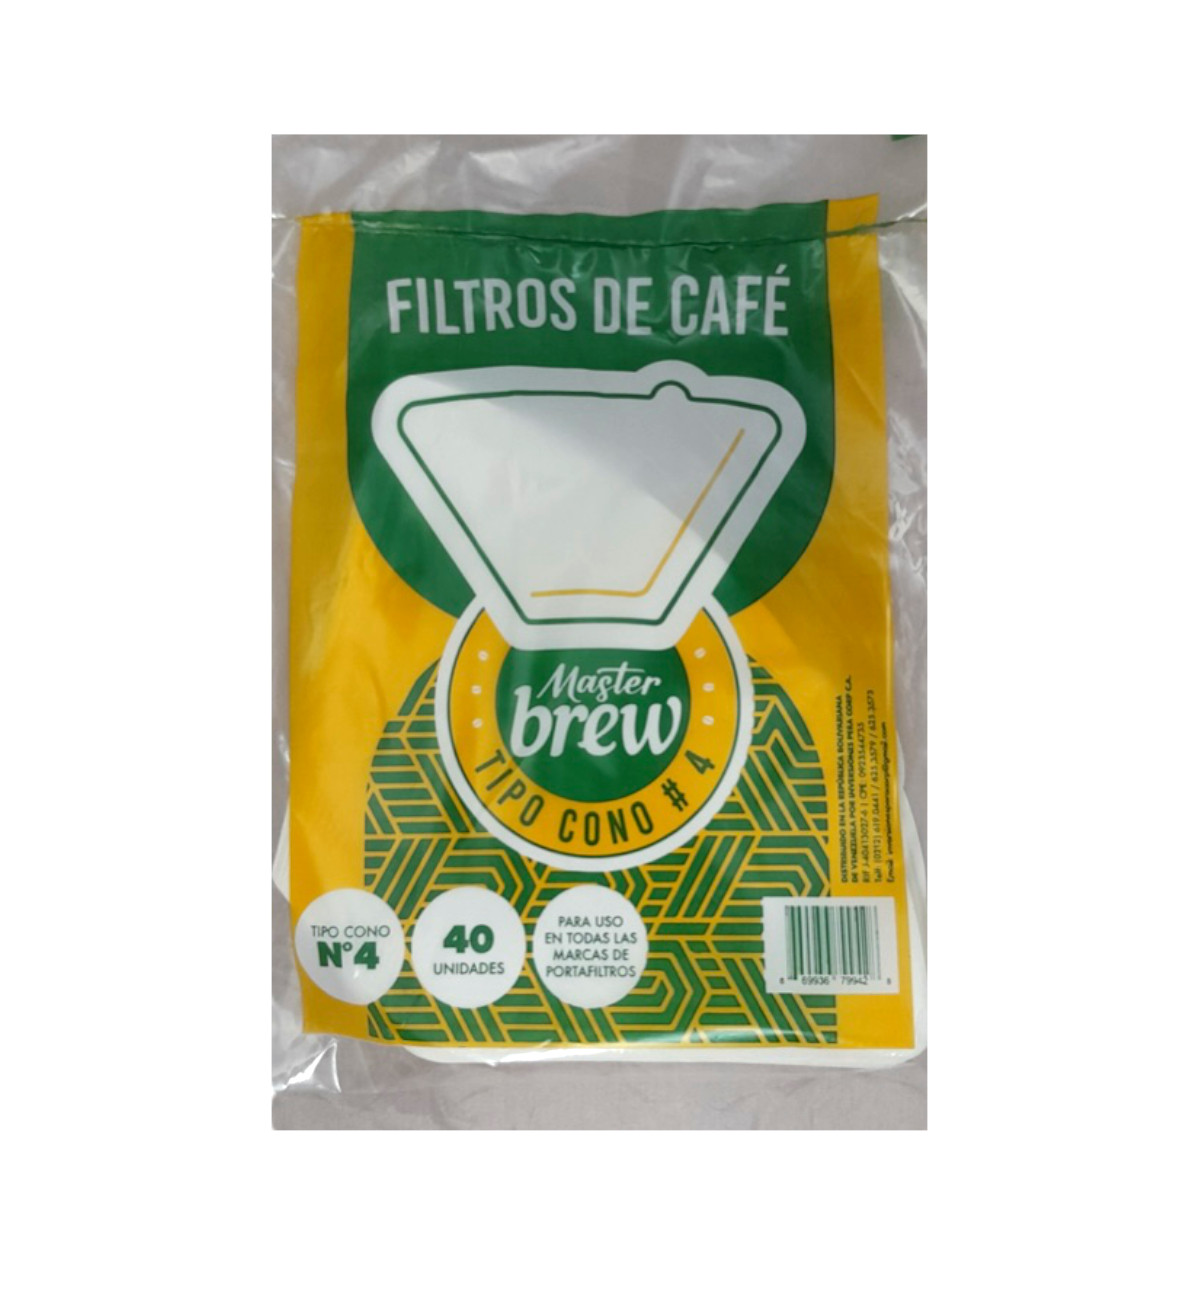 Filtro para Cafetera tipo Cono # 4 Master Brew x 40